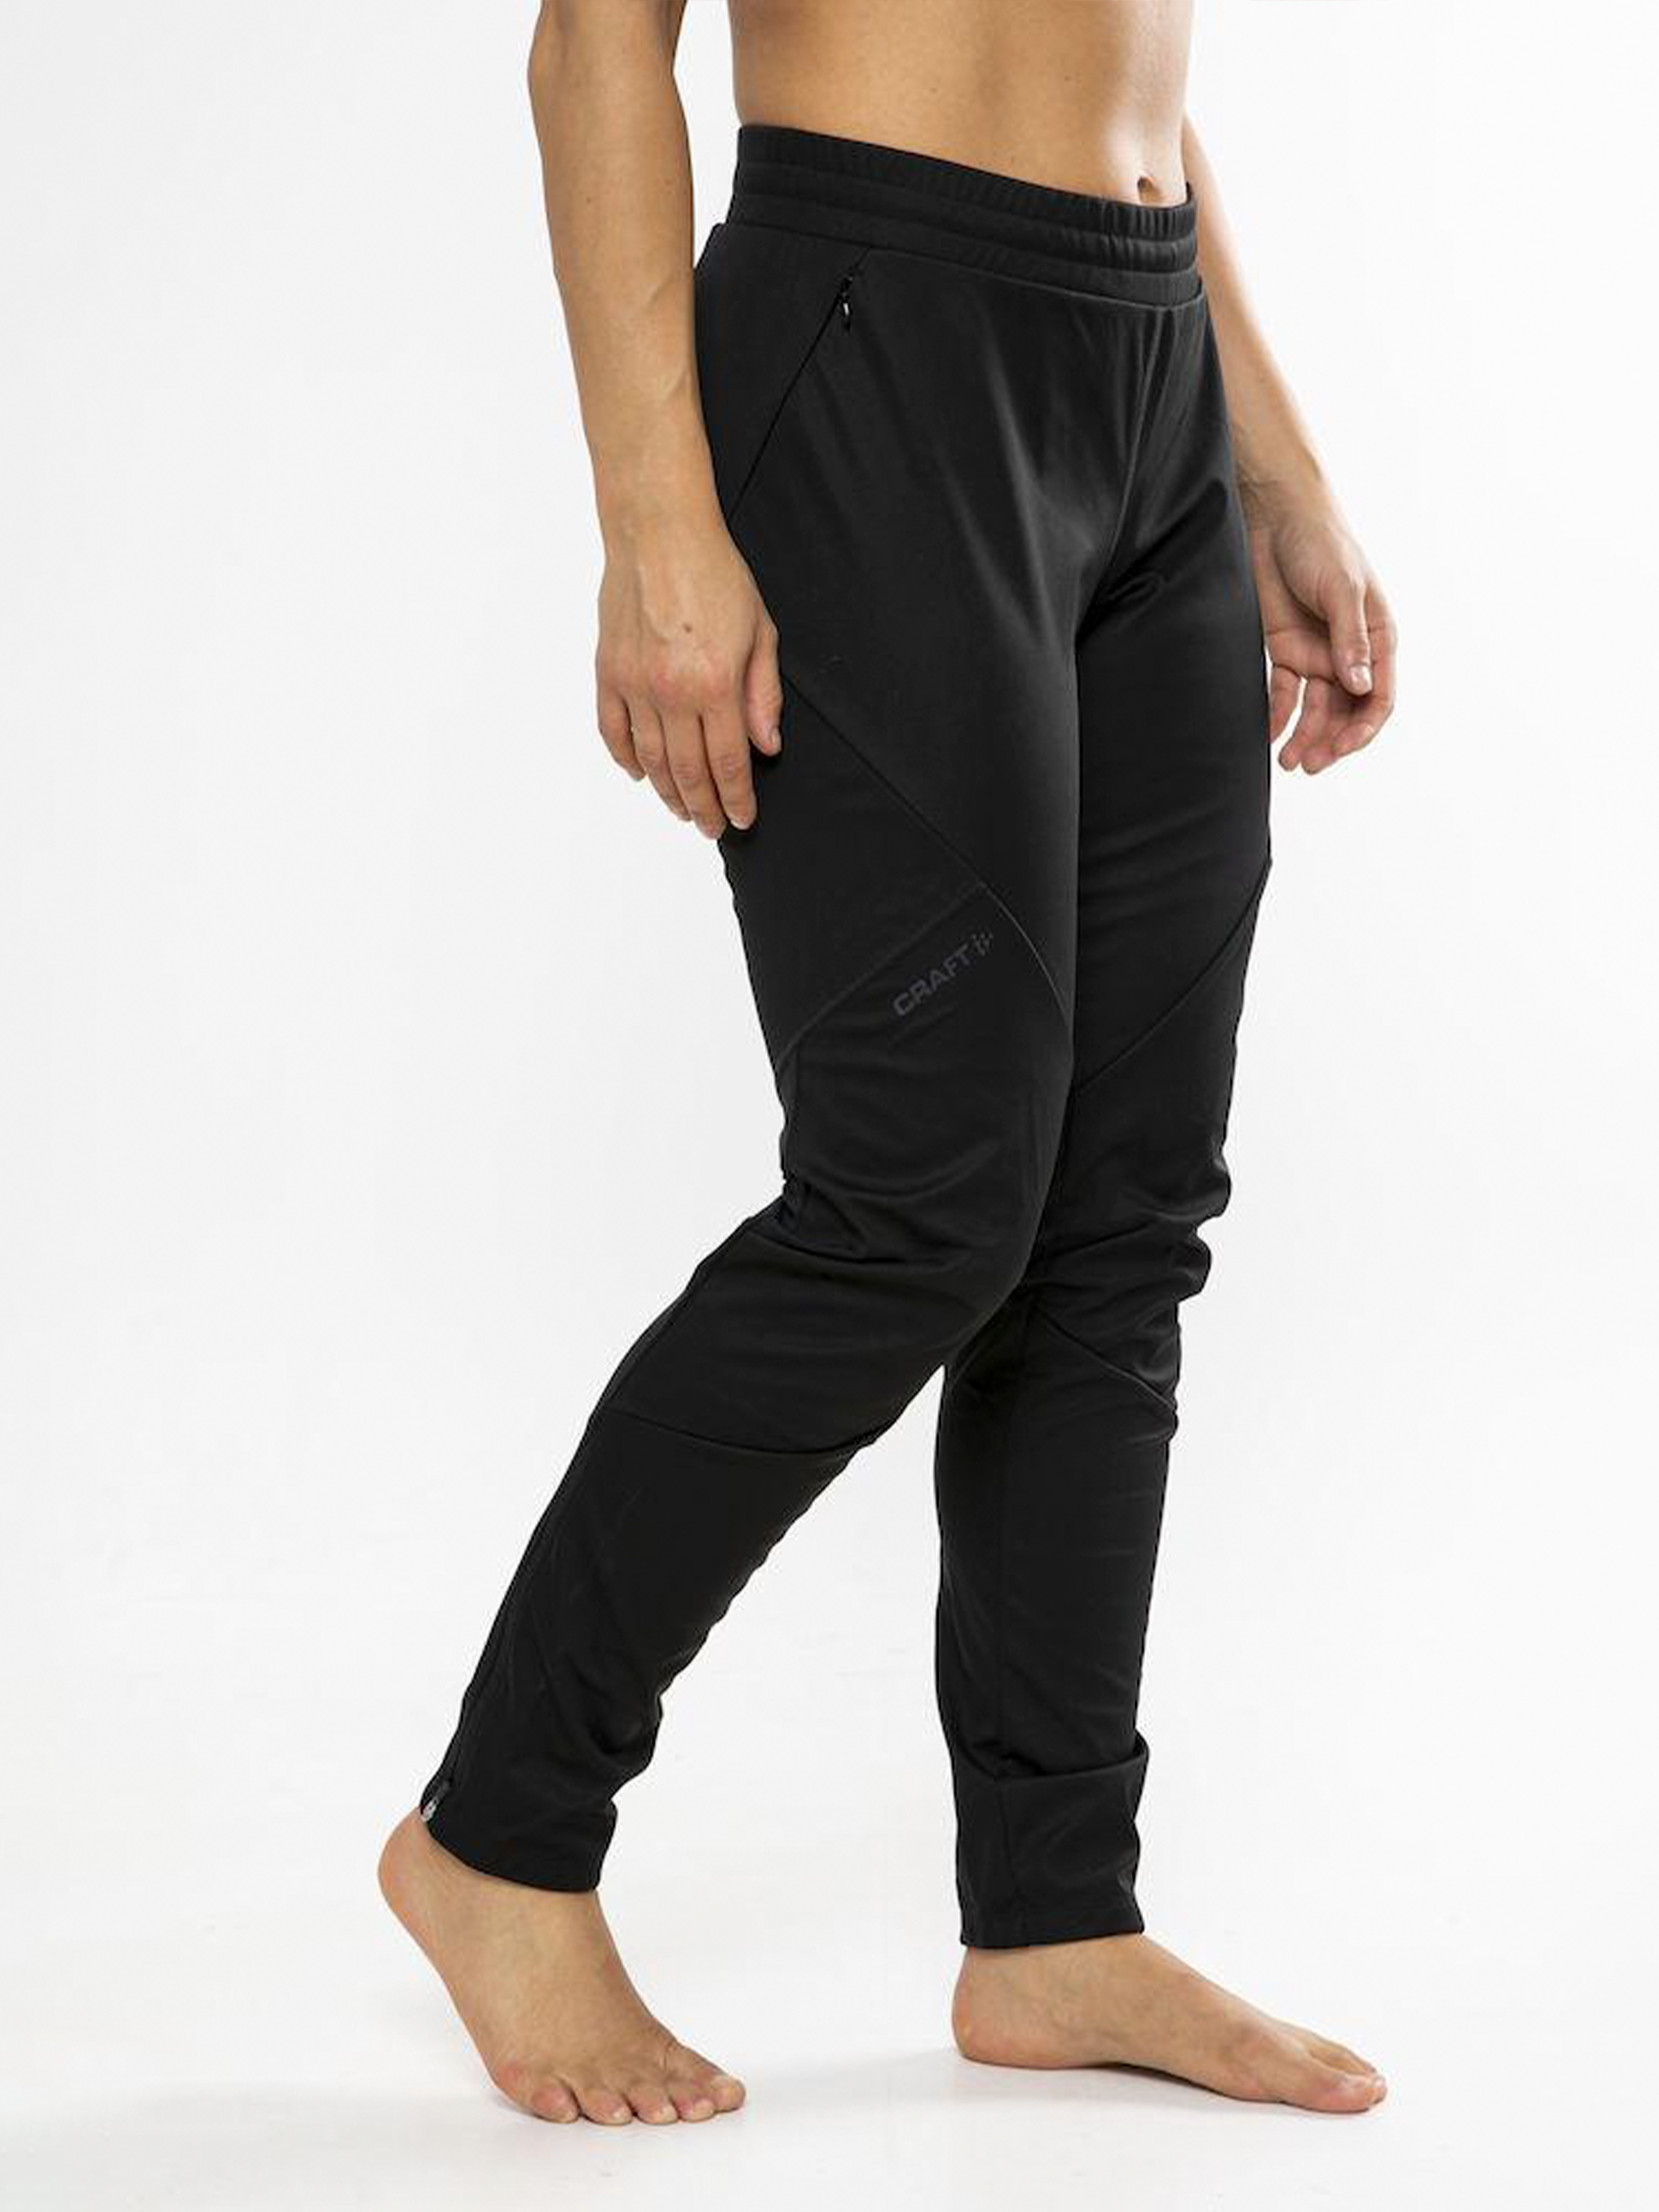  Craft Sportswear Women's Glide Pants, Black, X